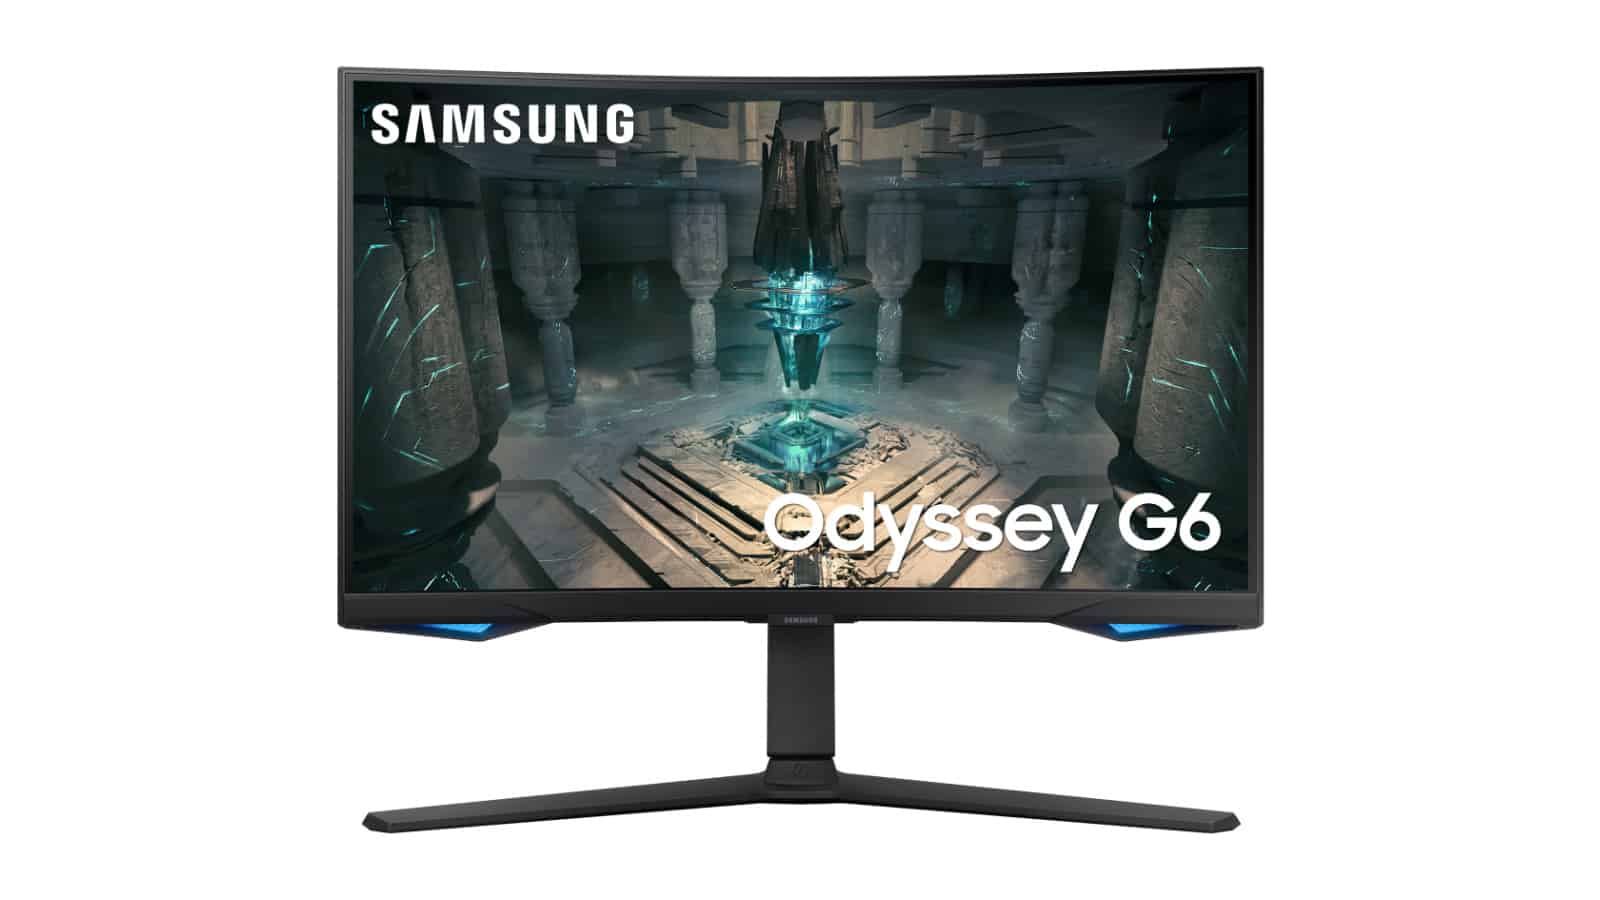 ¡Casi la mitad de precio!  Consigue el Samsung Odyssey G6 por $400